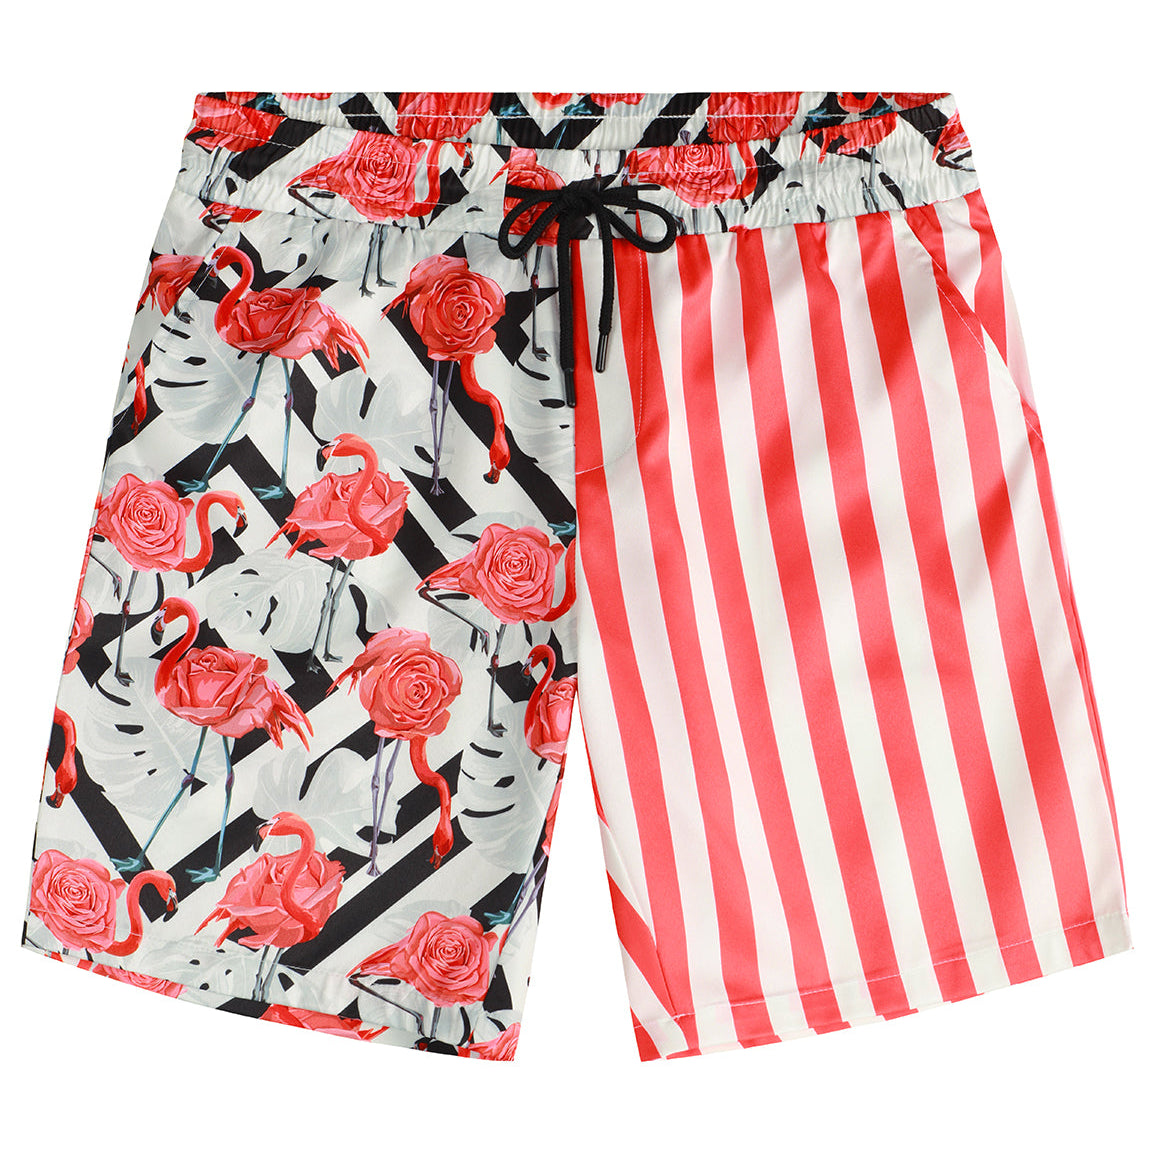 Men's Flamingo and Red Striped Beach Hawaiian Aloha Summer Shorts